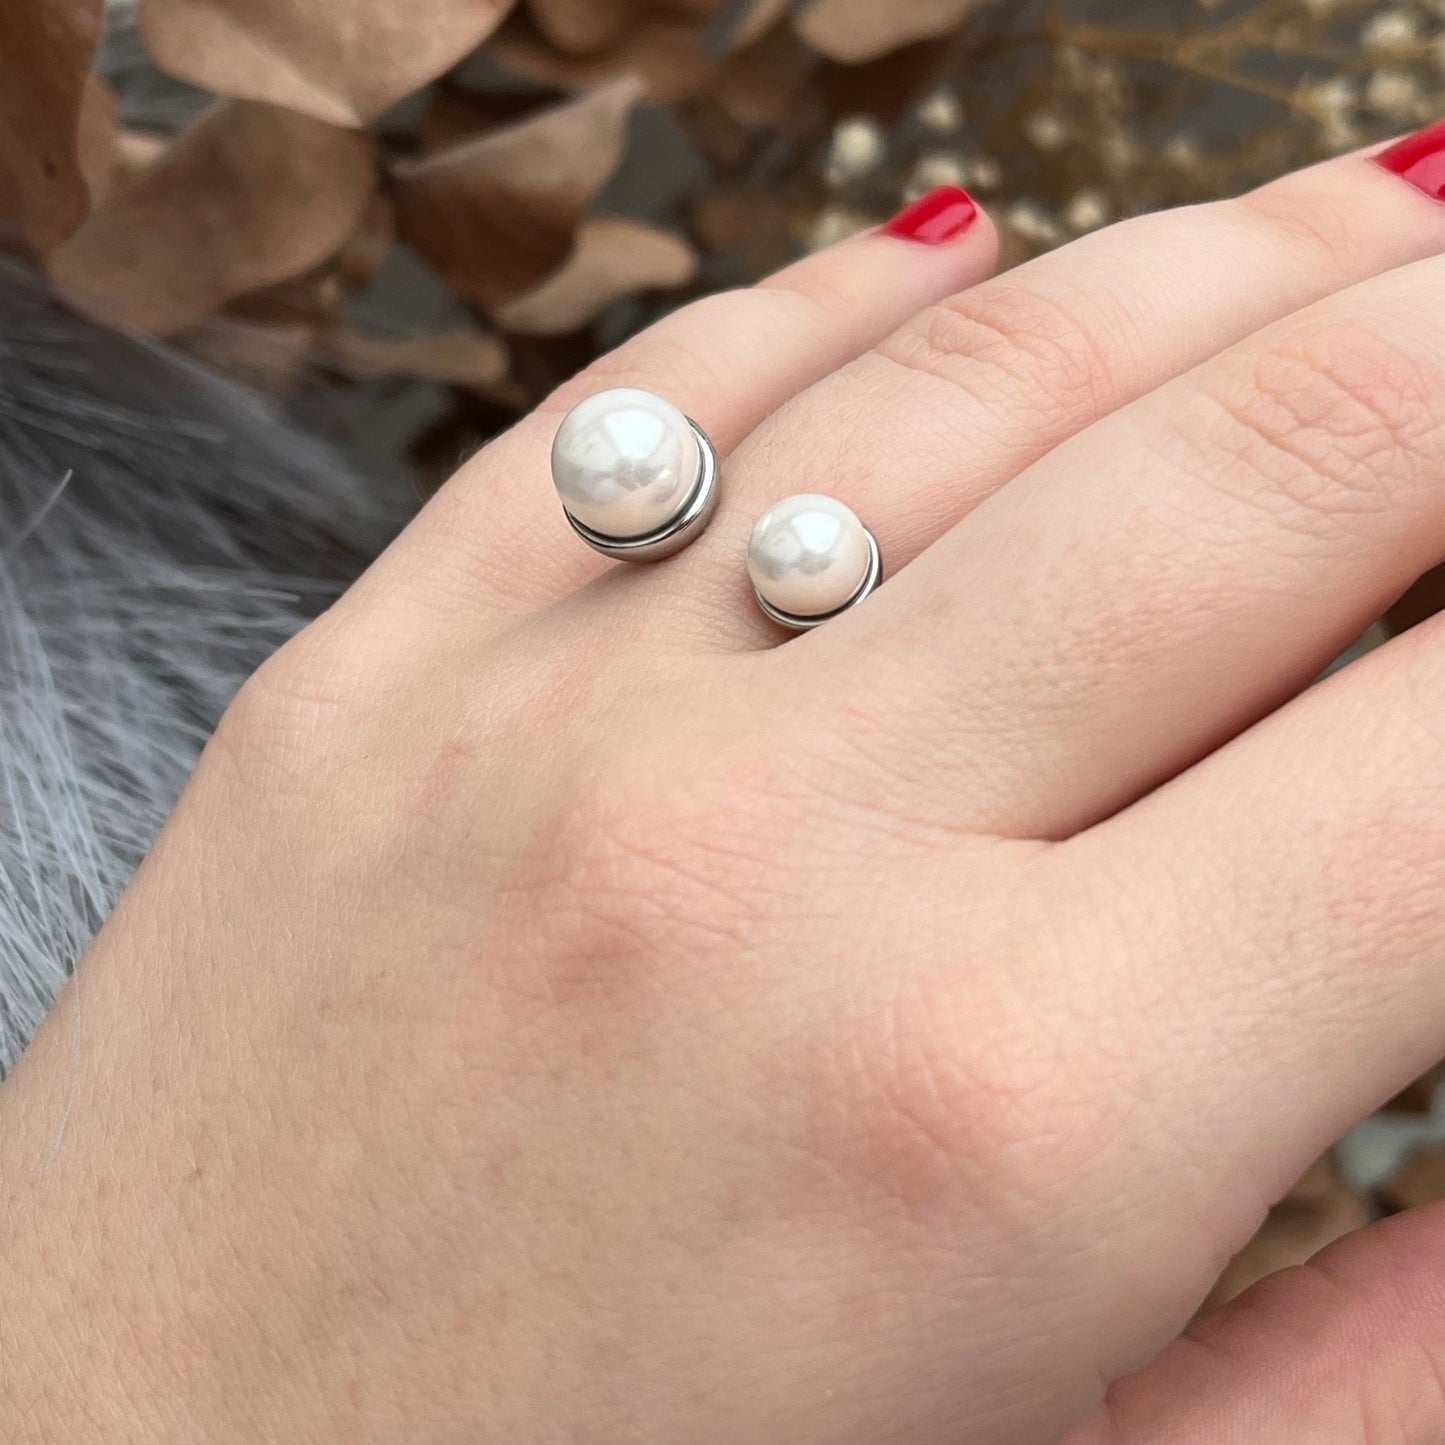 Perlové prsteny, Dámské prsteny s perlou, Prsten s perličkami, perlový prstýnek, stříbrný prsten s pravou perlou, Otevřený prsten s perlou, Prsten s říční perlou, stříbrný perlový prsten